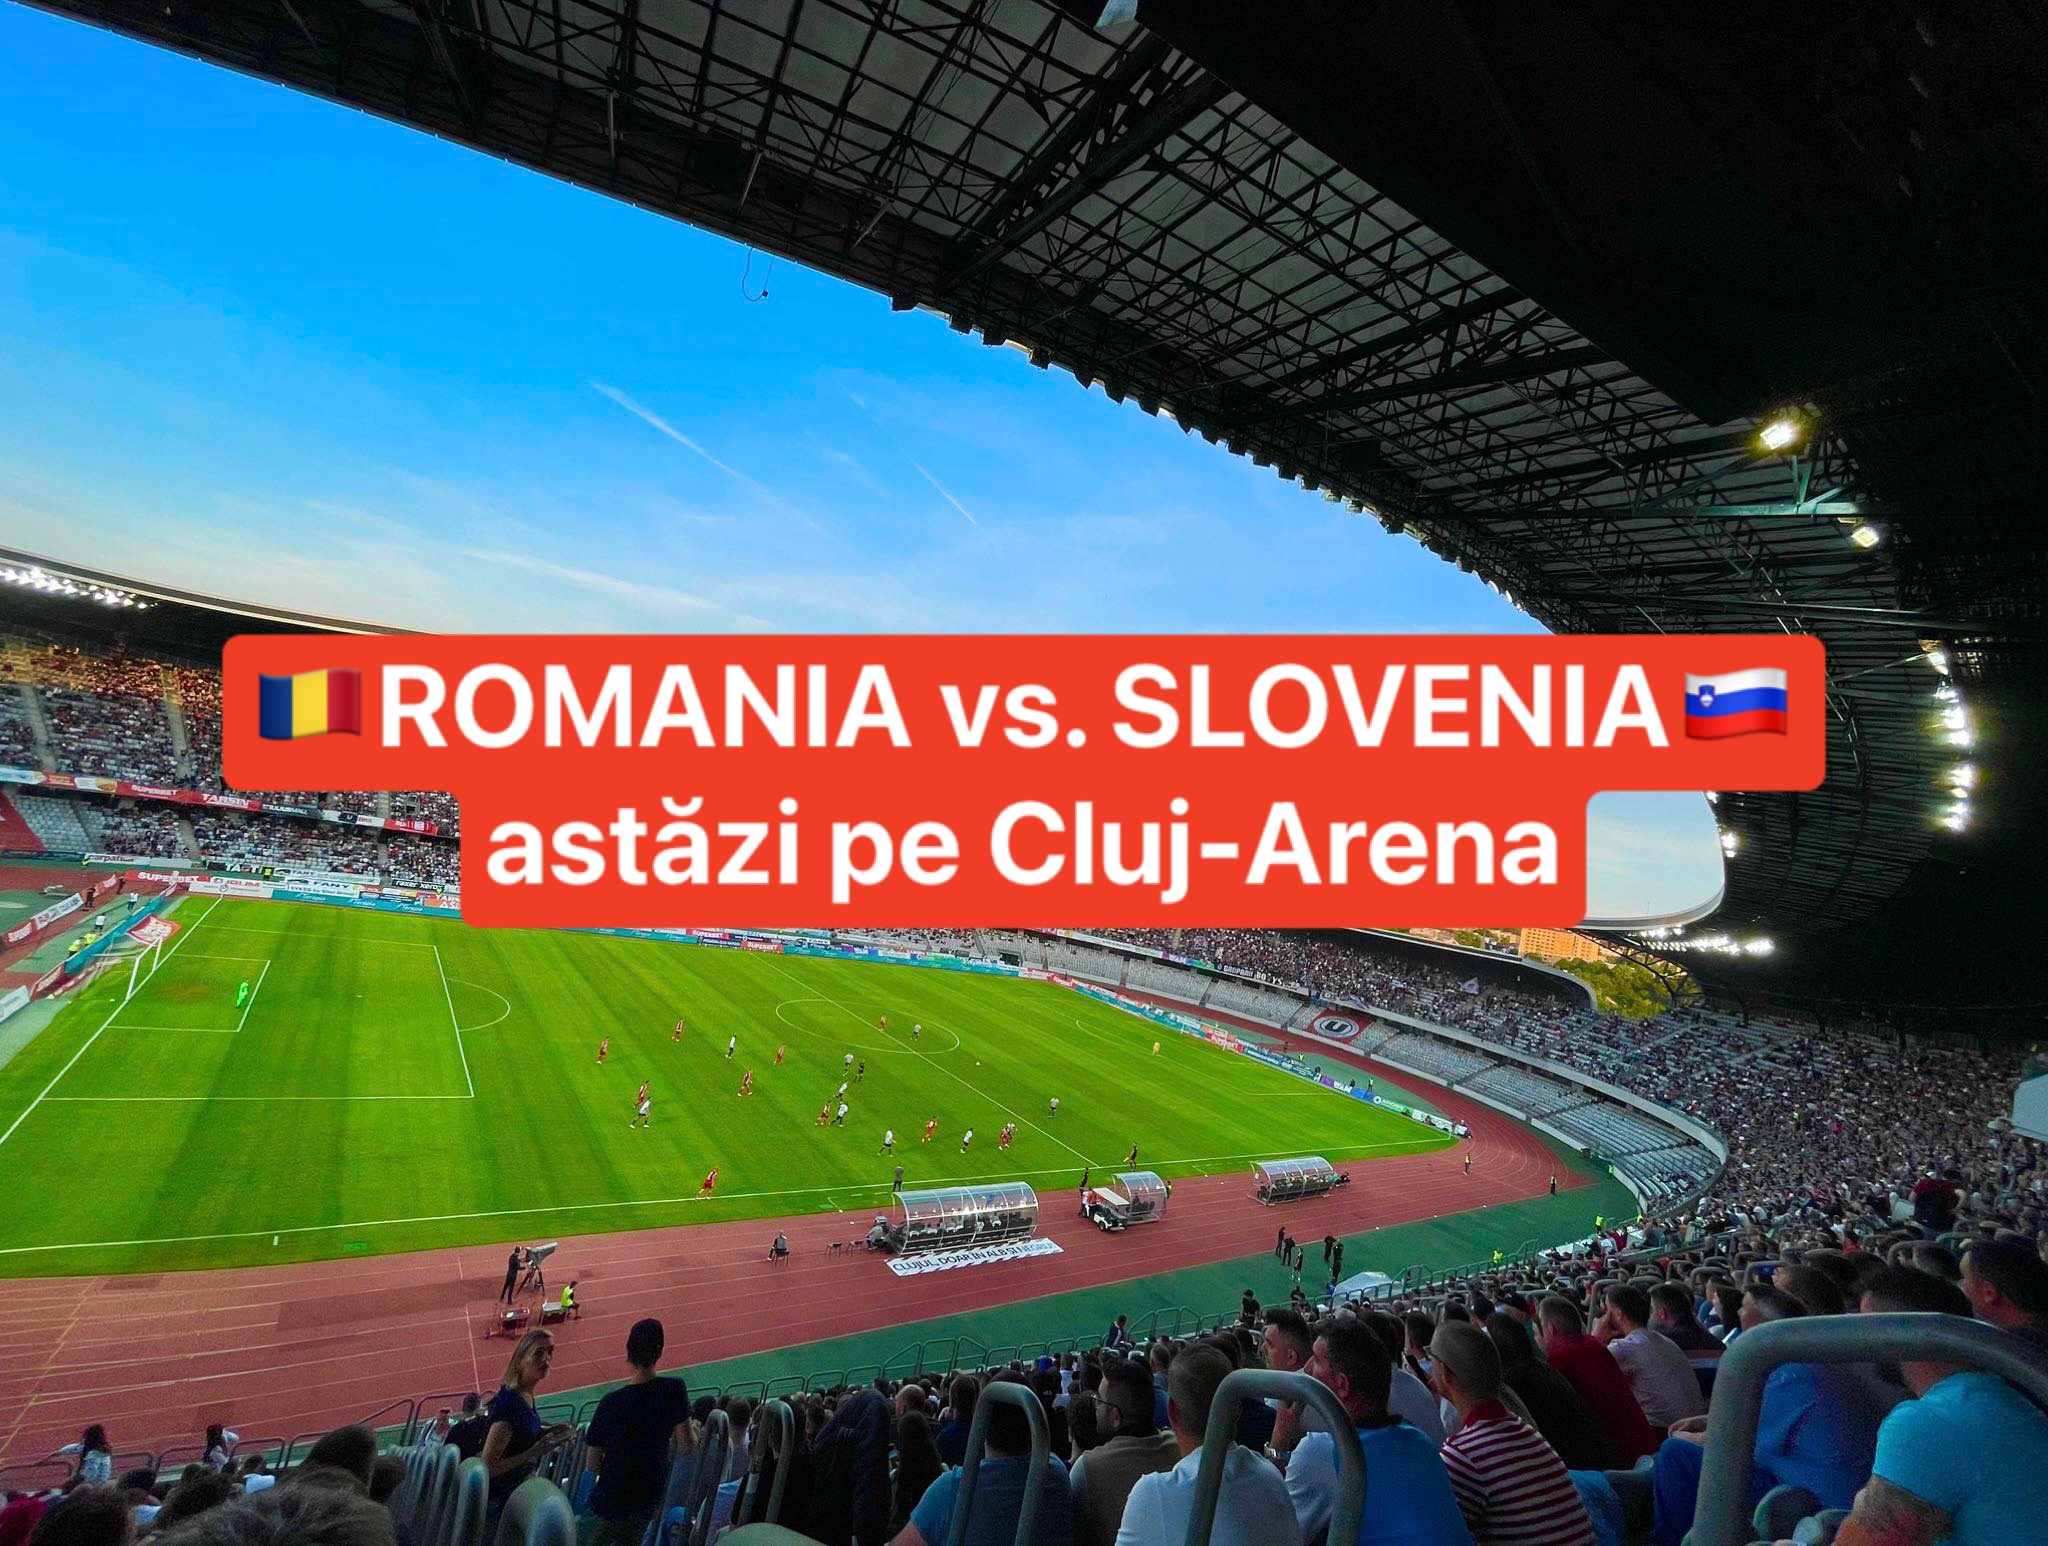 Naționala de fotbal a României va juca astăzi un meci împotriva Sloveniei pe Cluj Arena. Cât costă biletele